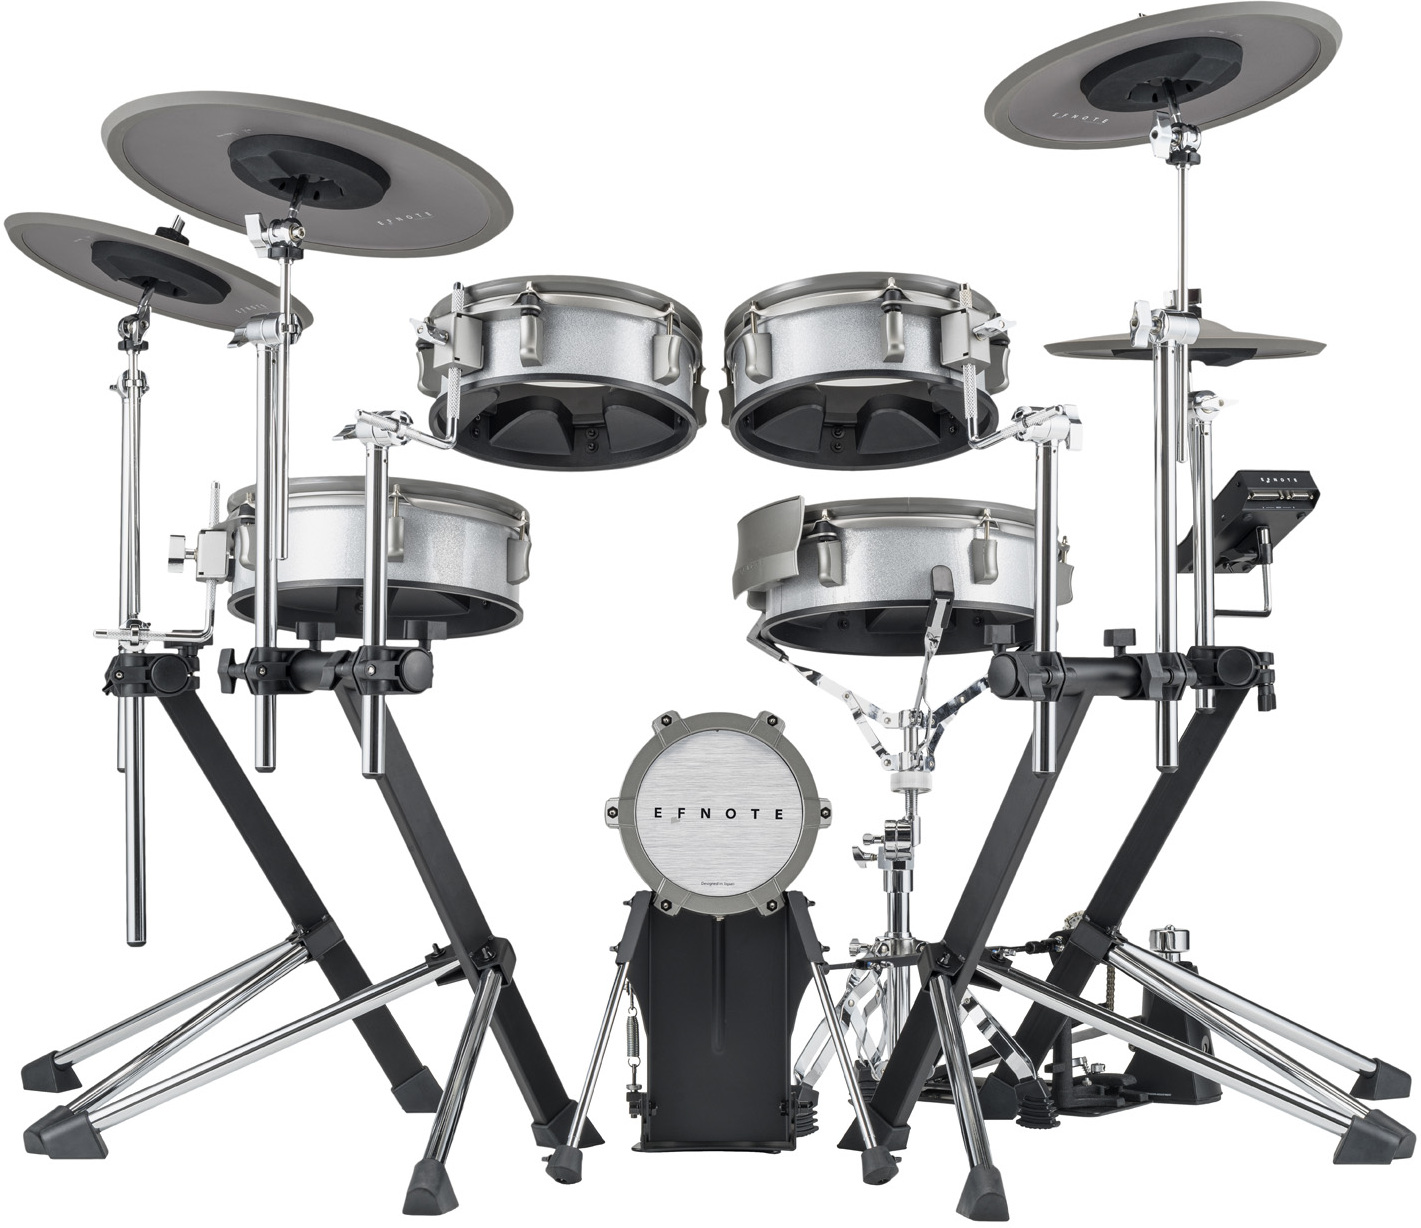 Efnote Efd3 Drum Kit - Batería electrónica completa - Main picture